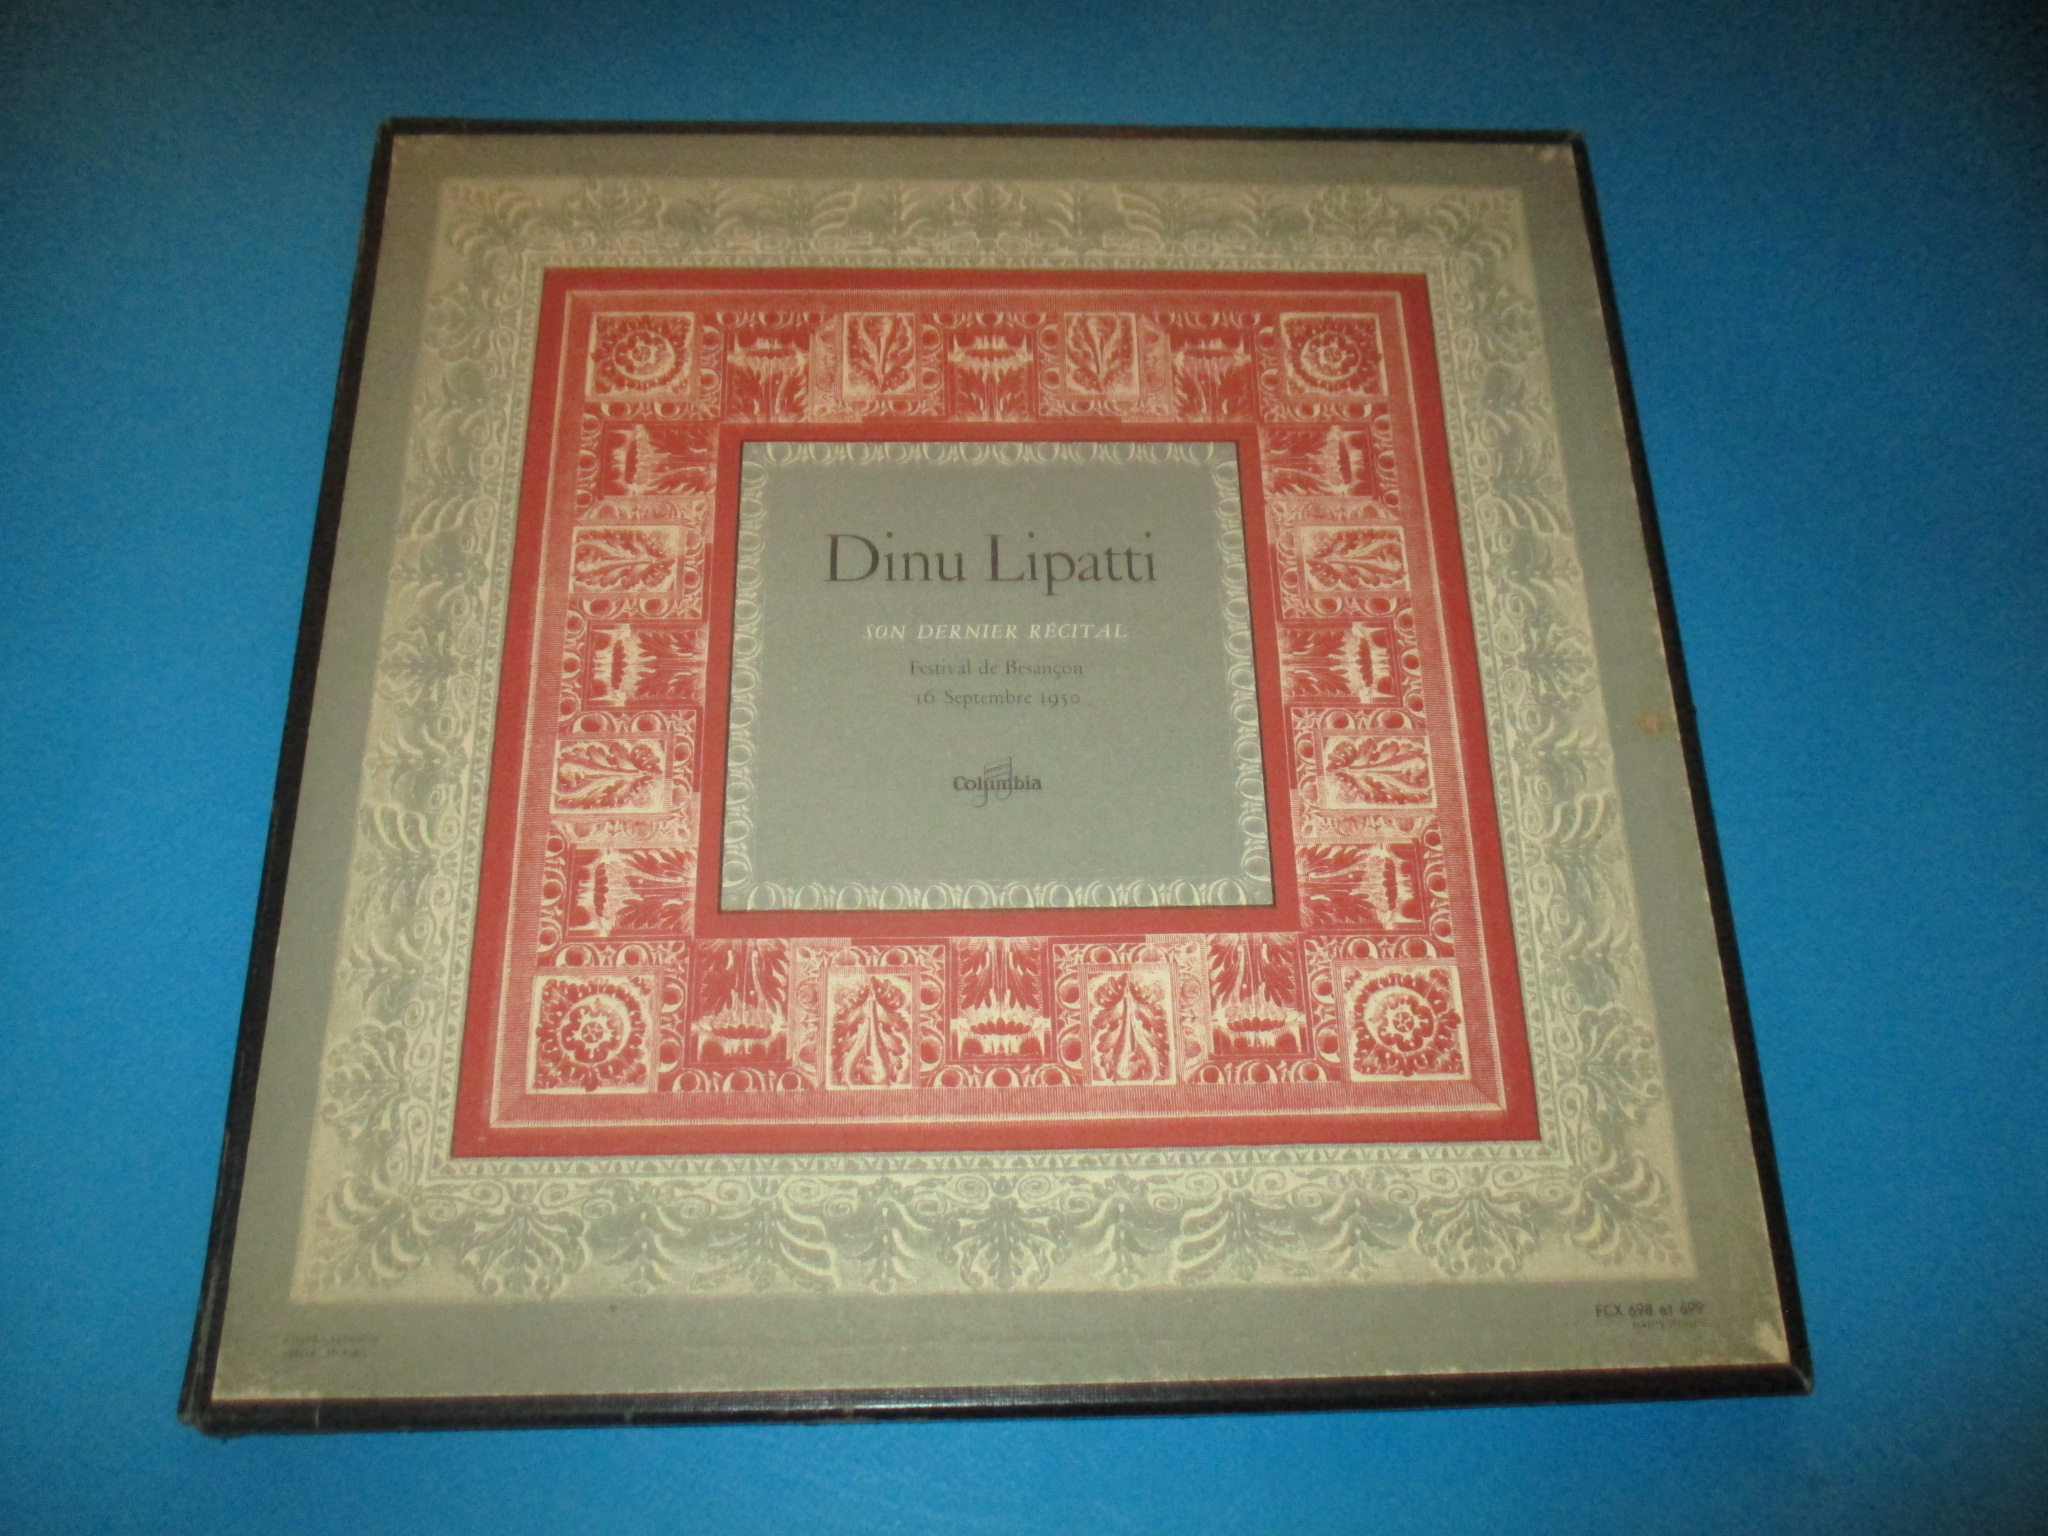 Coffret 2 disques Dinu Lipatti, Son dernier récital, Festival de Besançon 16 septembre 1950, Columbia